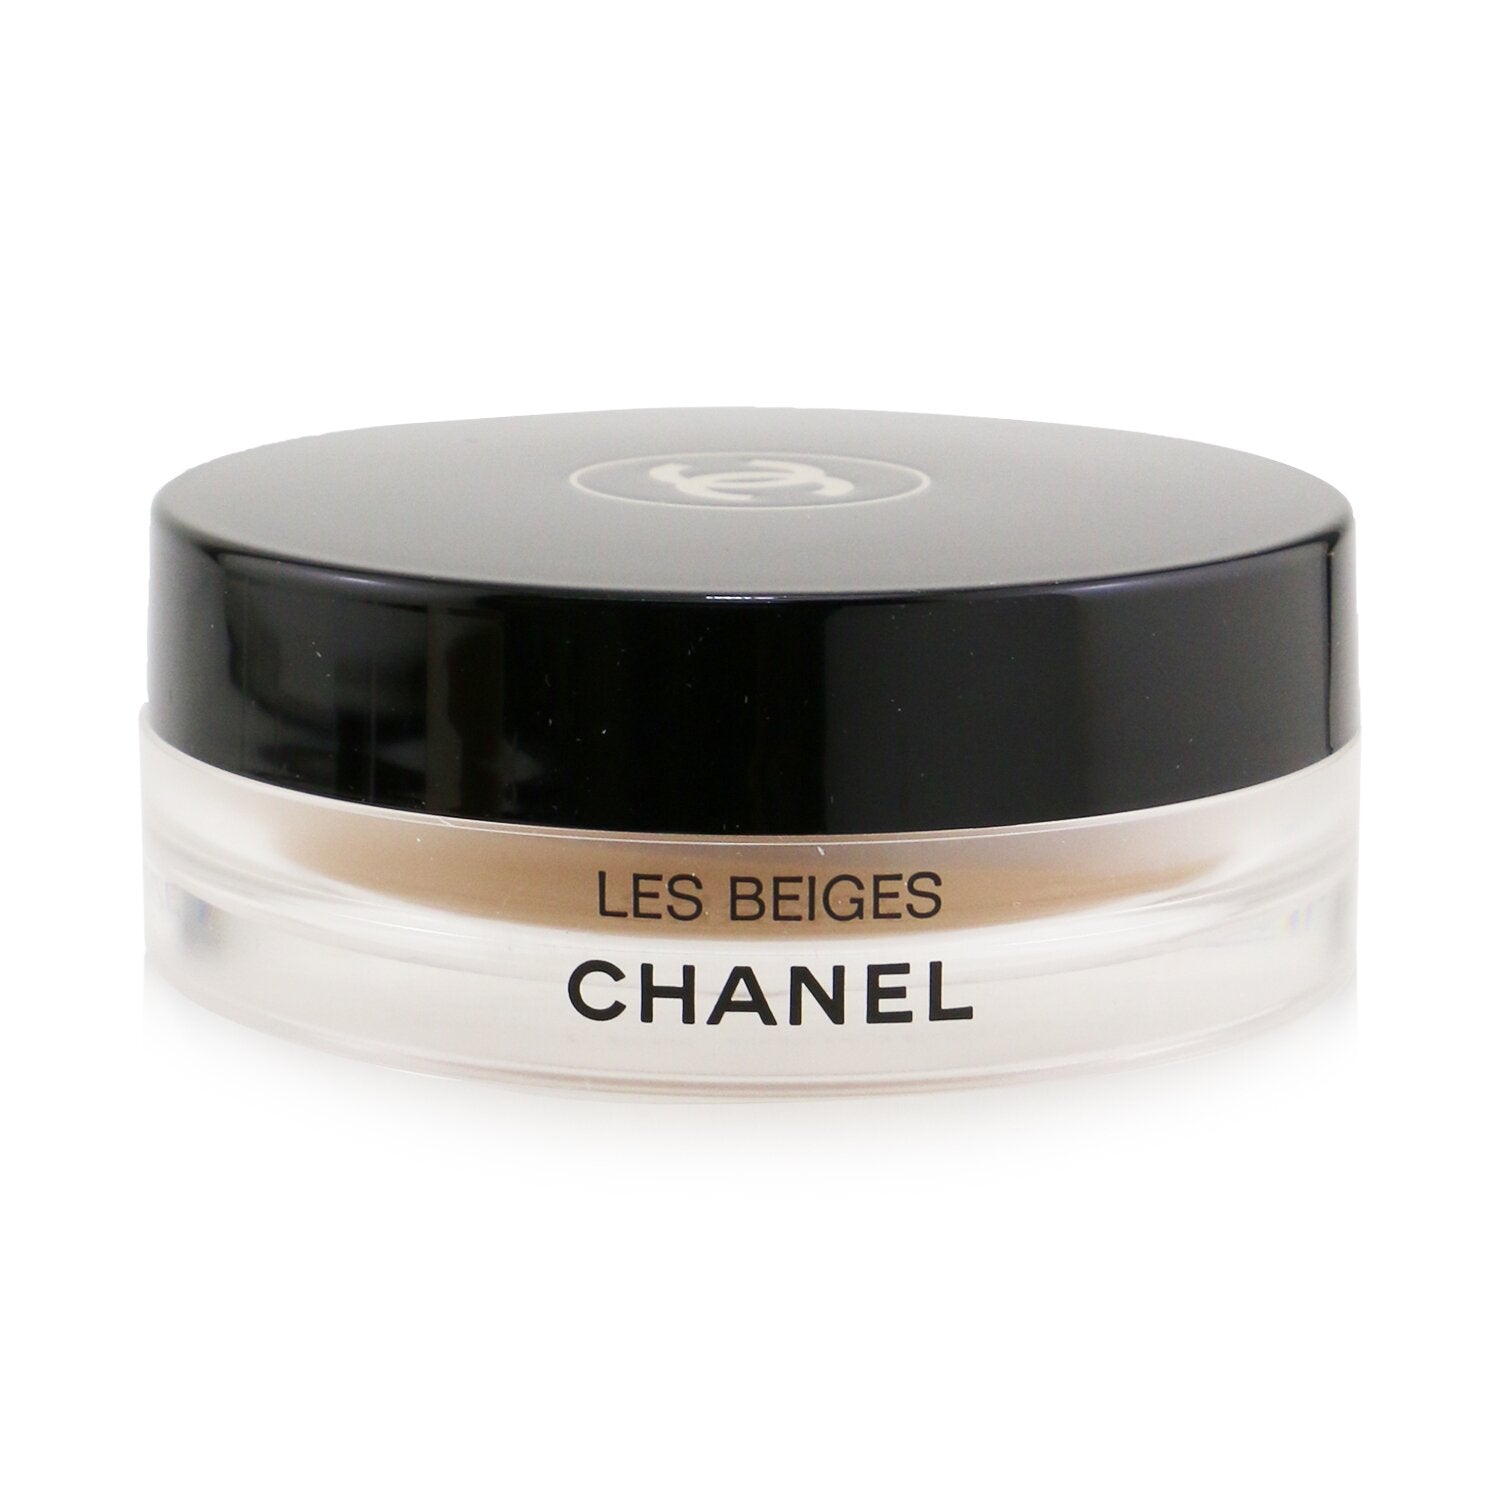 Chanel Soleil Tan De Chanel Bronzing Makeup Base 30g/1oz